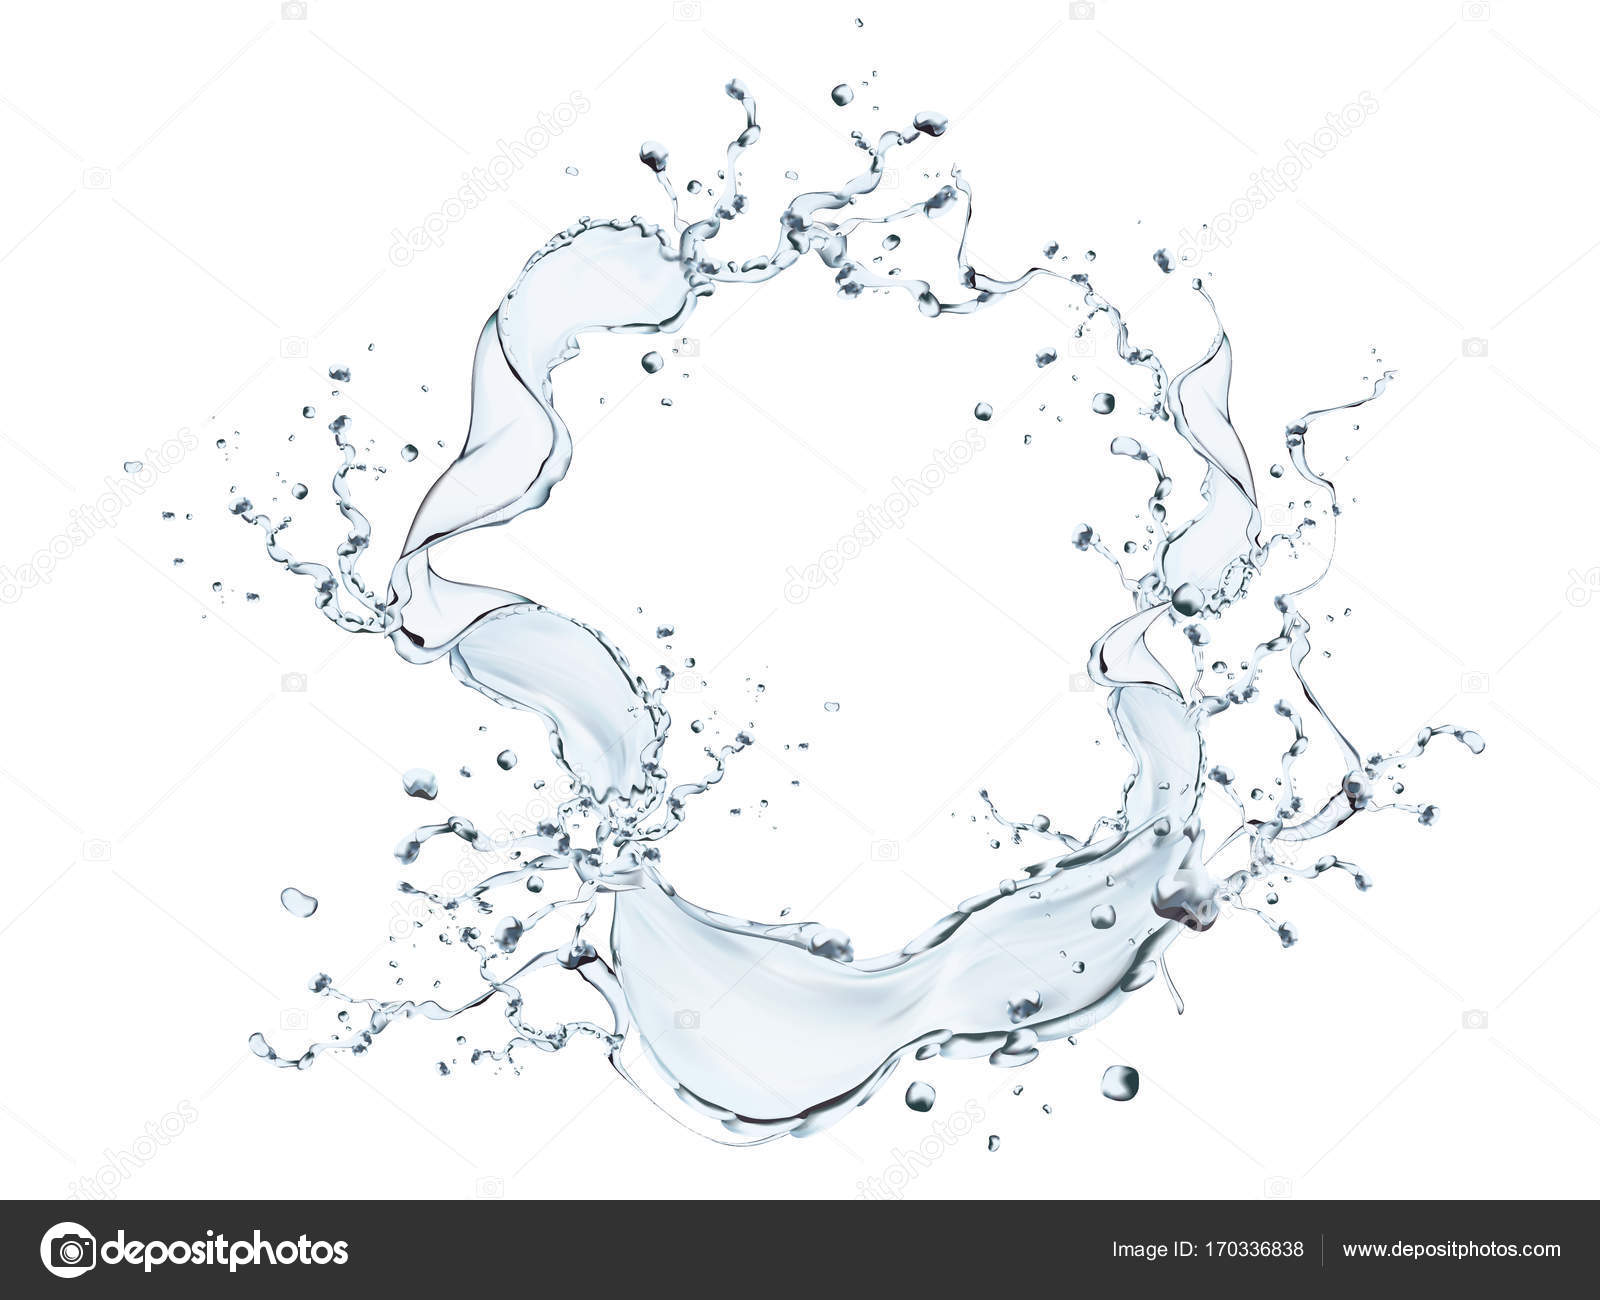 Splashing water photo